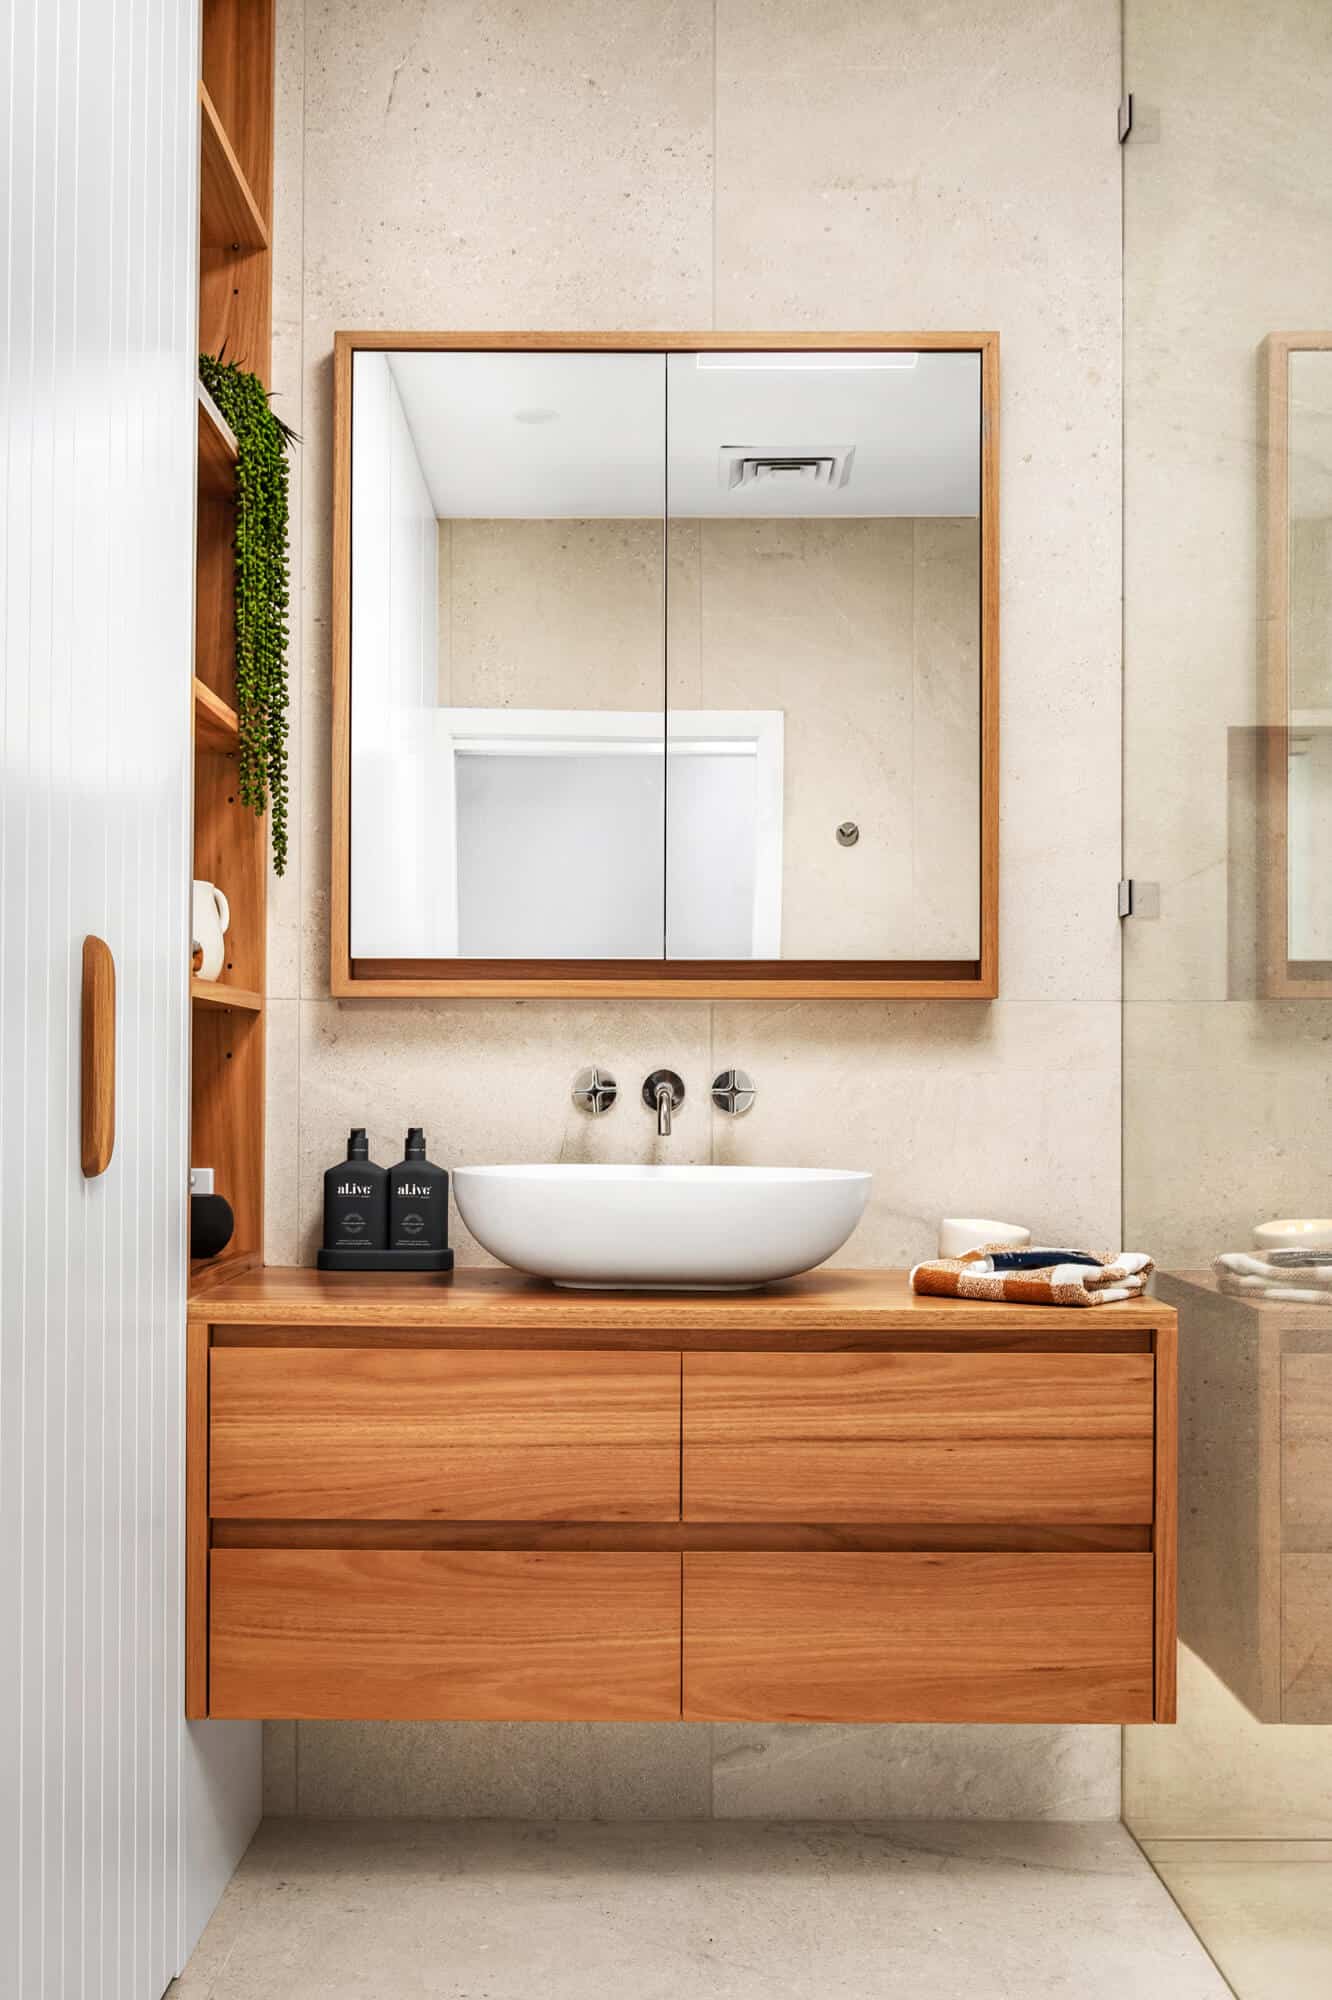 Shaving Cabinet vs Bathroom Mirror Bathroom Design